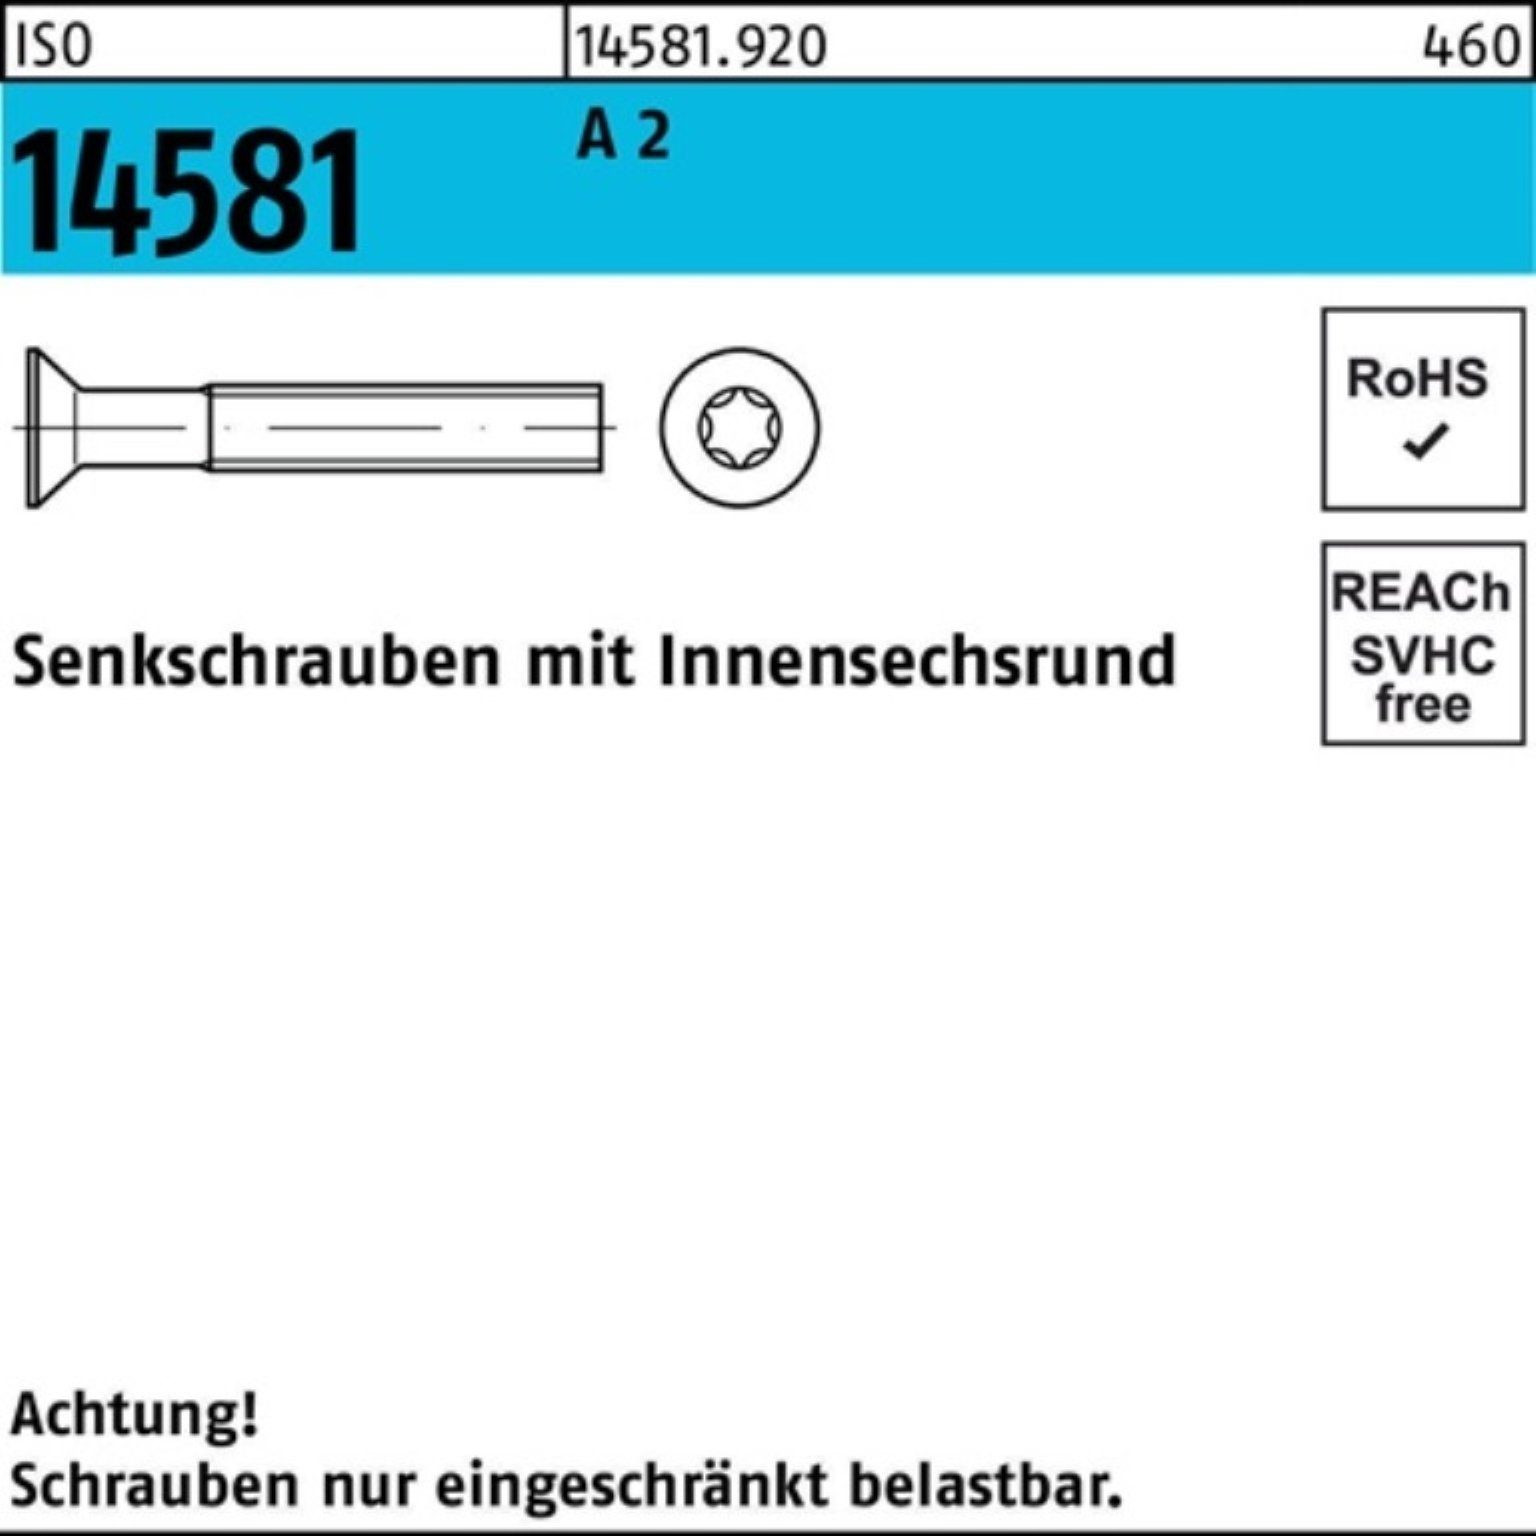 2000 ISO Stück T6 Senkschraube A 2 M2x 2000er Senkschraube Pack 12 14581 ISR 1 ISO Reyher